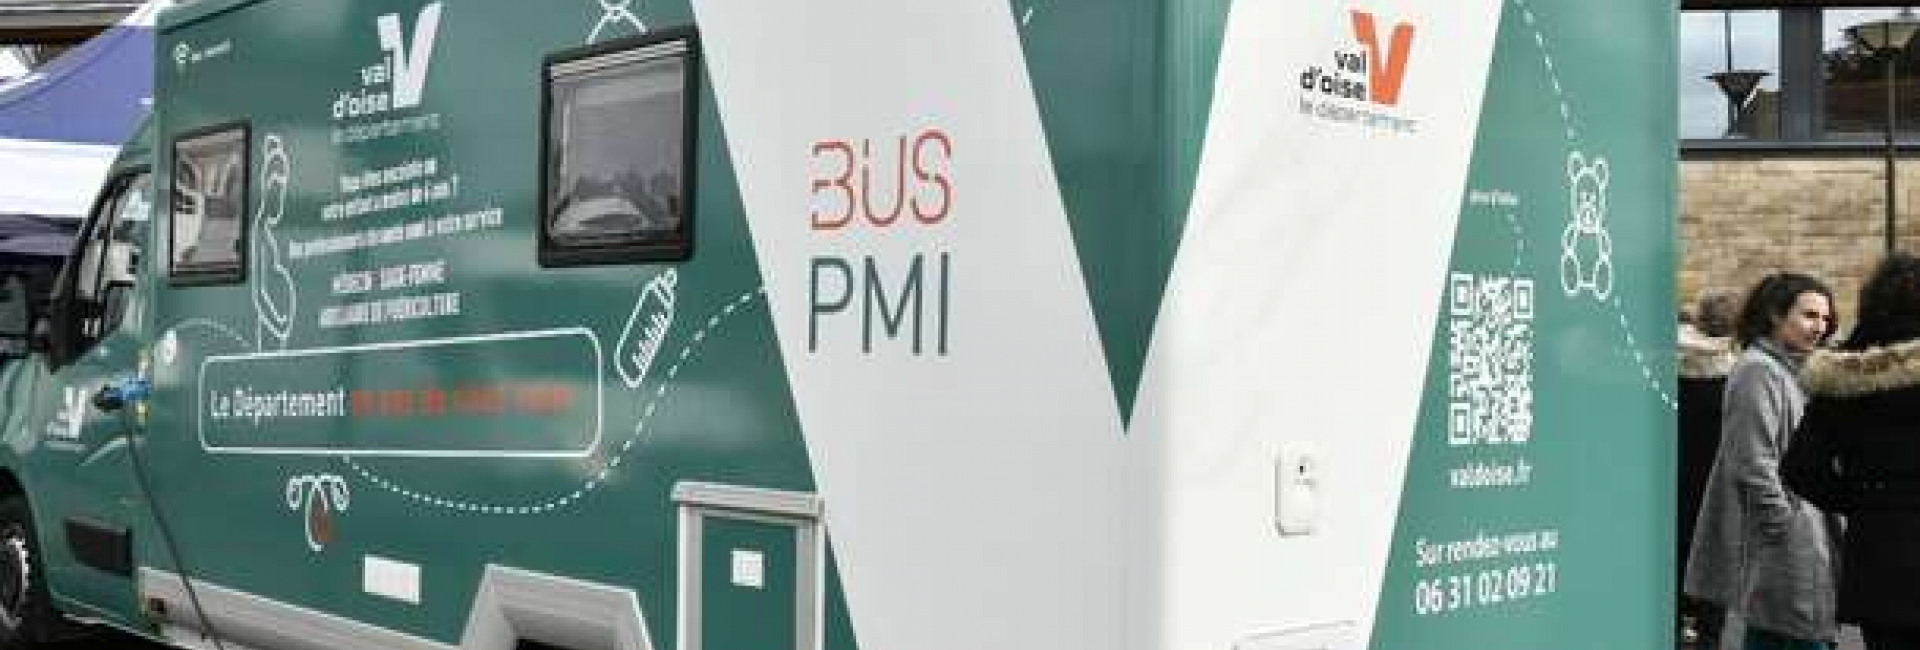 Bus PMI 95